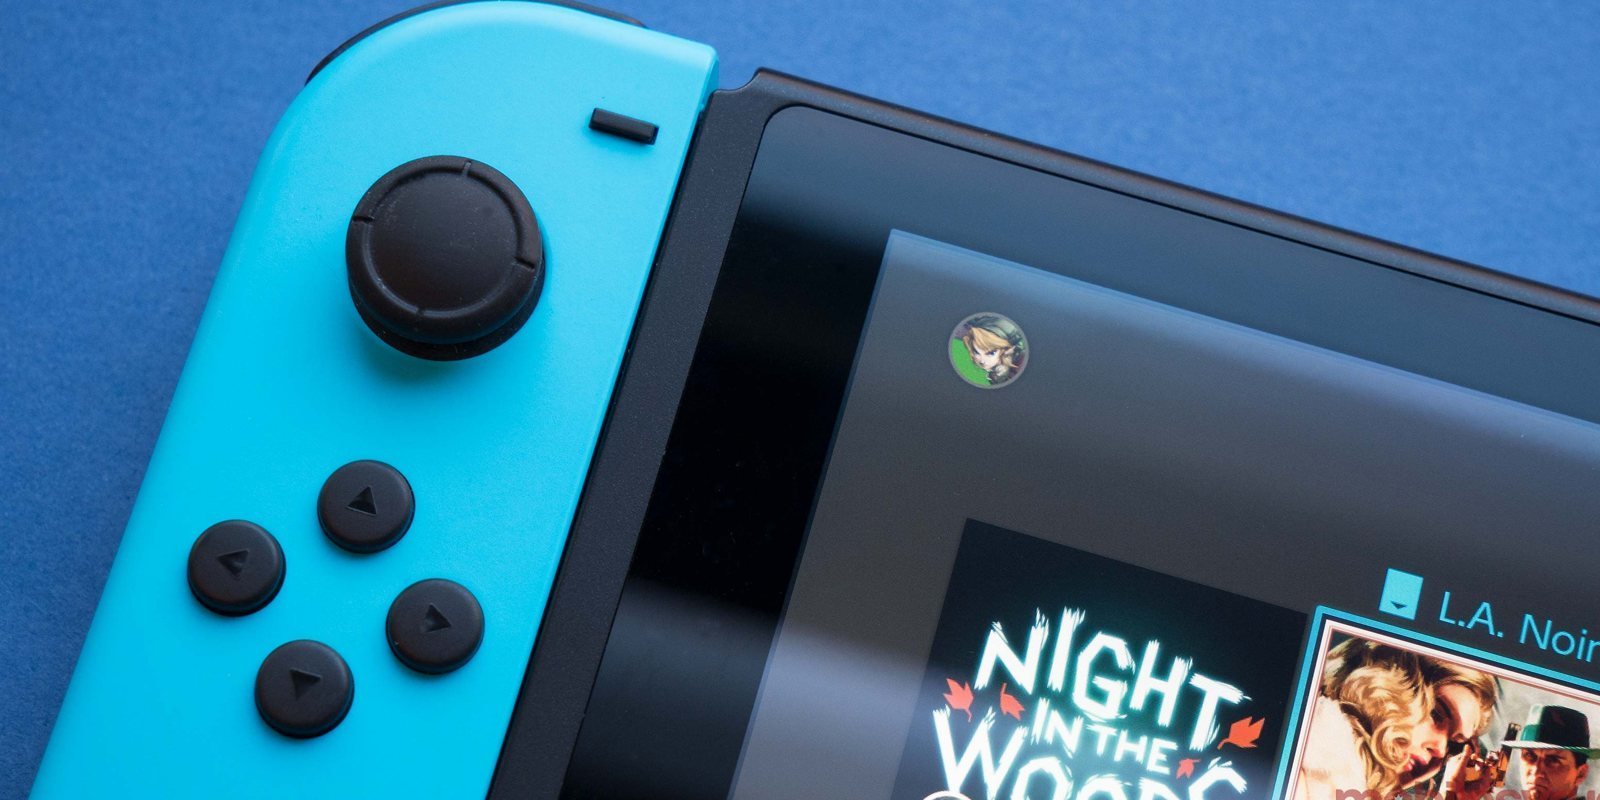 Una aerolínea regala Nintendo Switch a todos los pasajeros de su vuelo